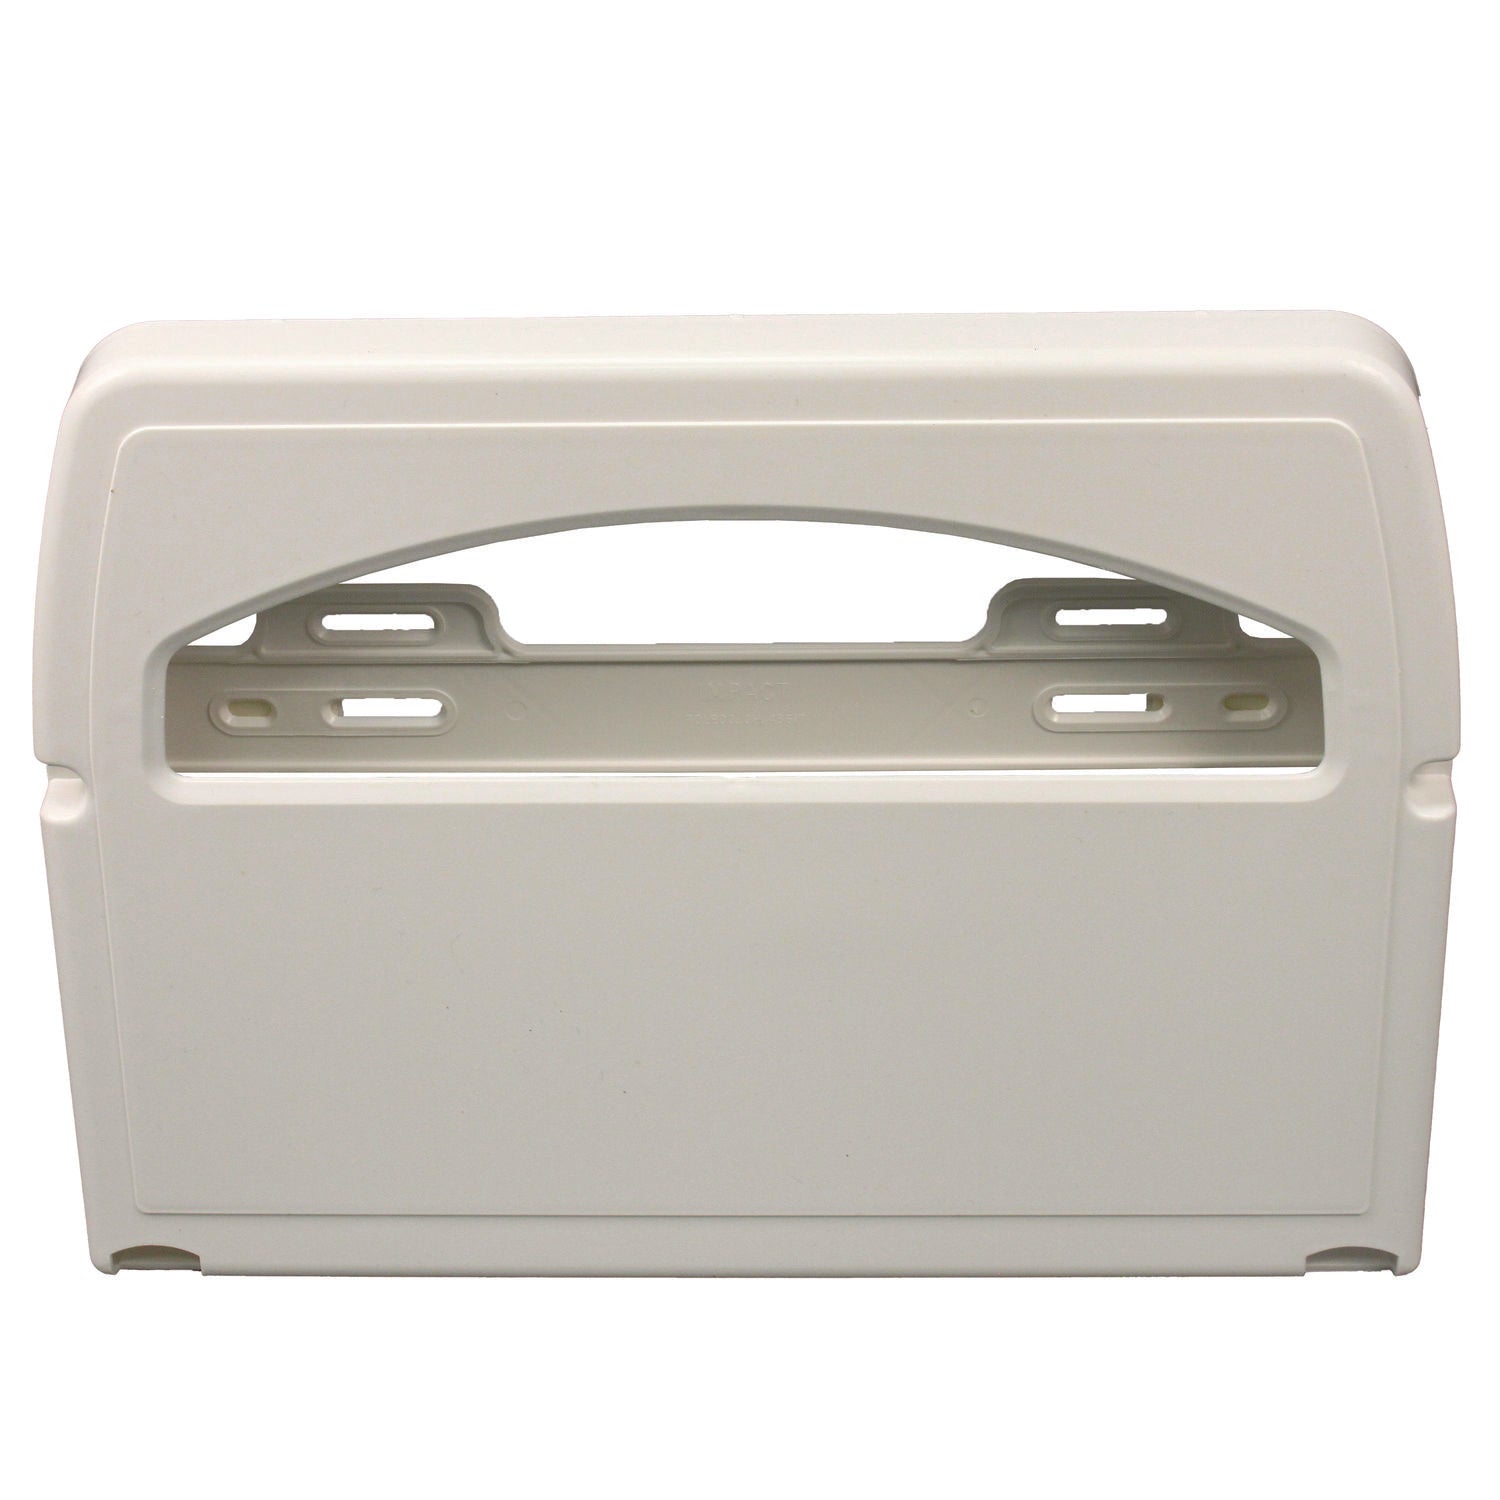 toilet-seat-cover-dispenser-164-x-305-x-119-white-2-carton_imp1120ct - 1